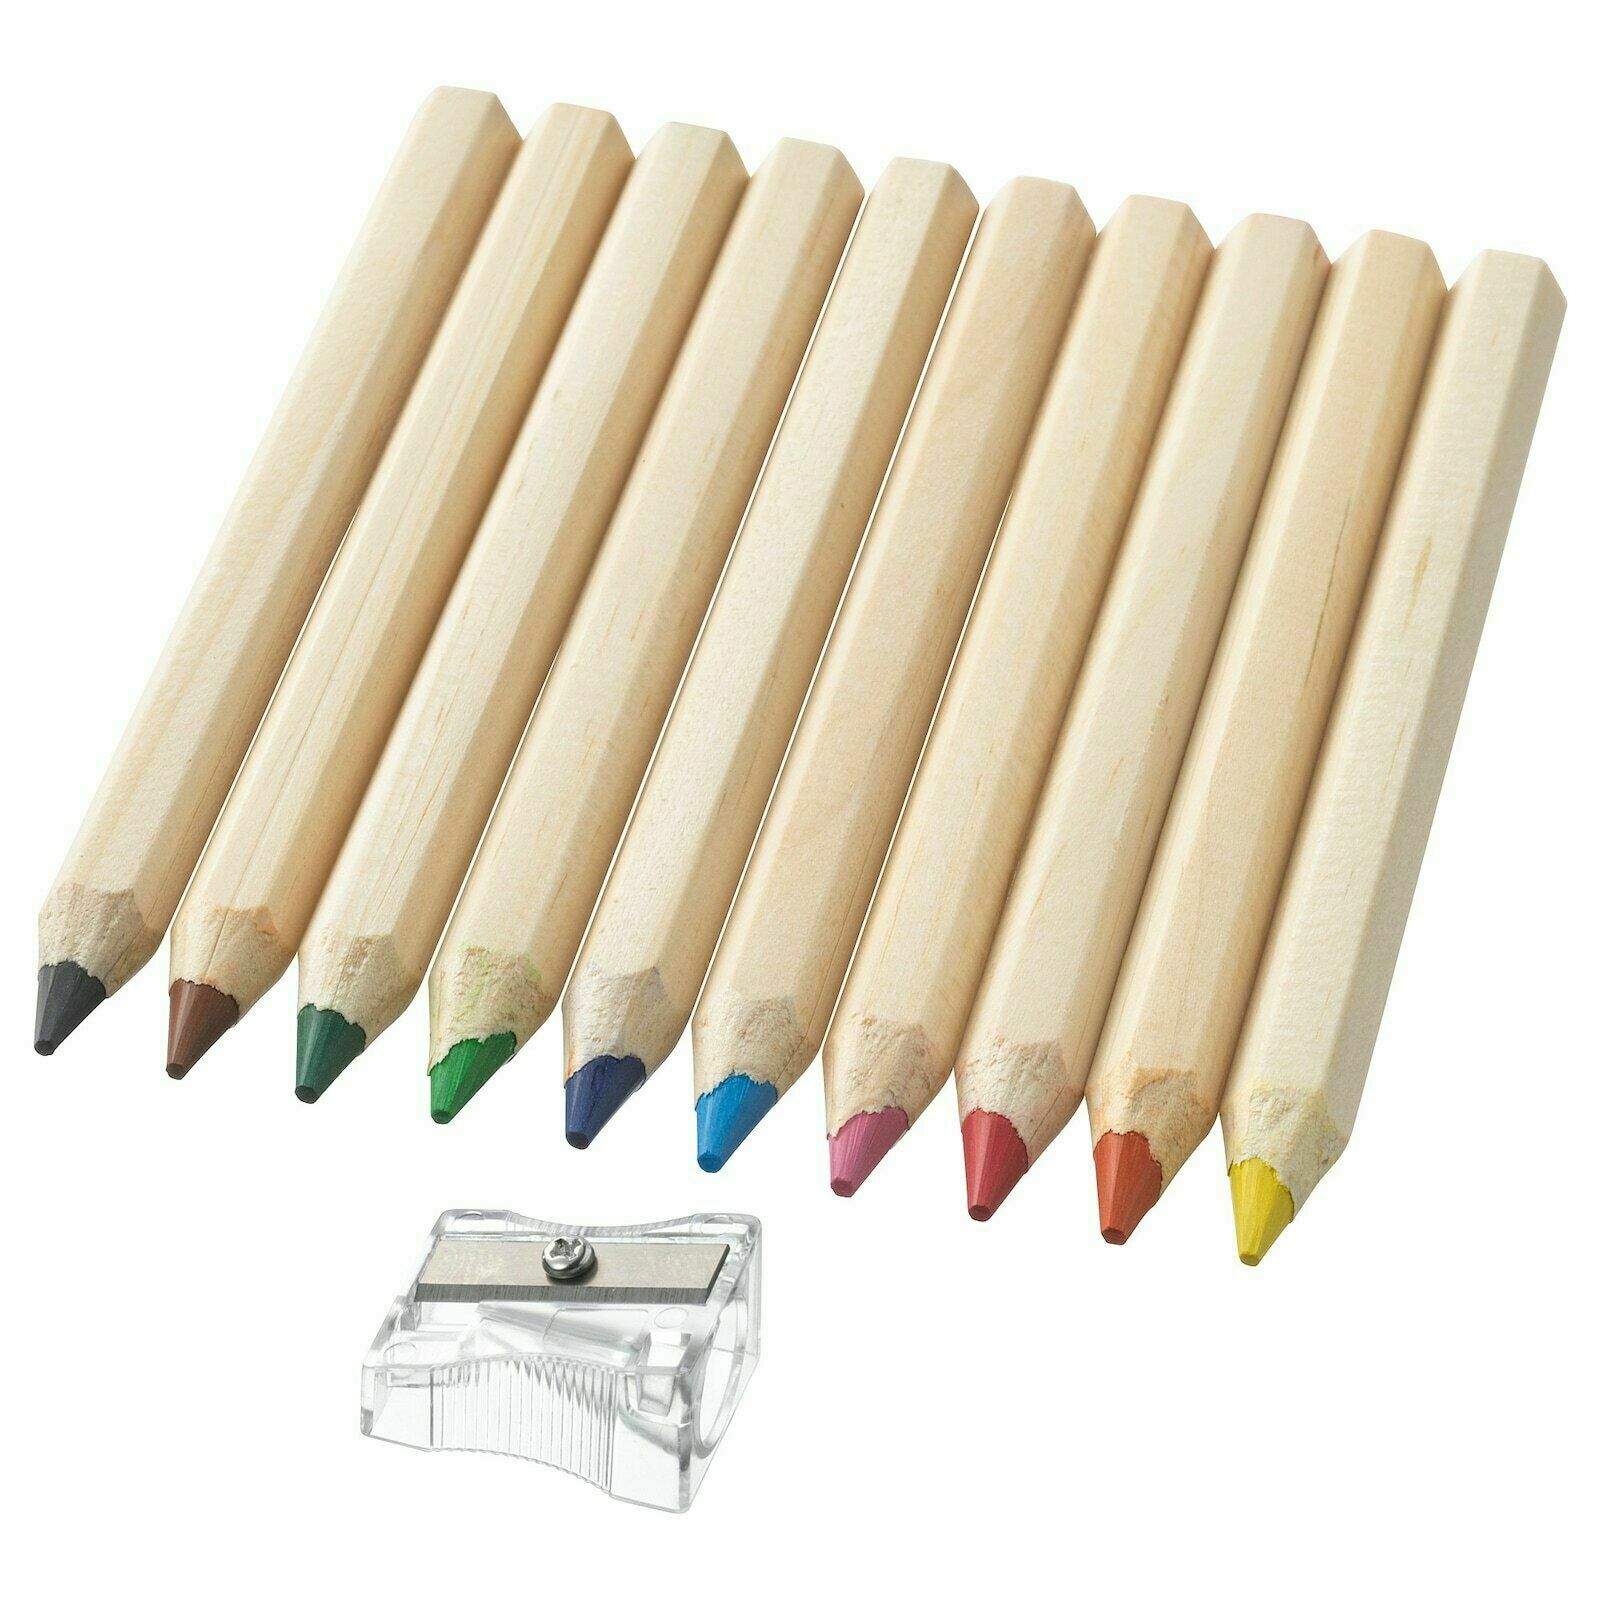 Ten pencils. Ikea Mala карандаши набор. Цветные карандаши ikea. Набор для рисования икеа Mala. Икеа цветной карандаш мола, разные цвета, 10 шт.